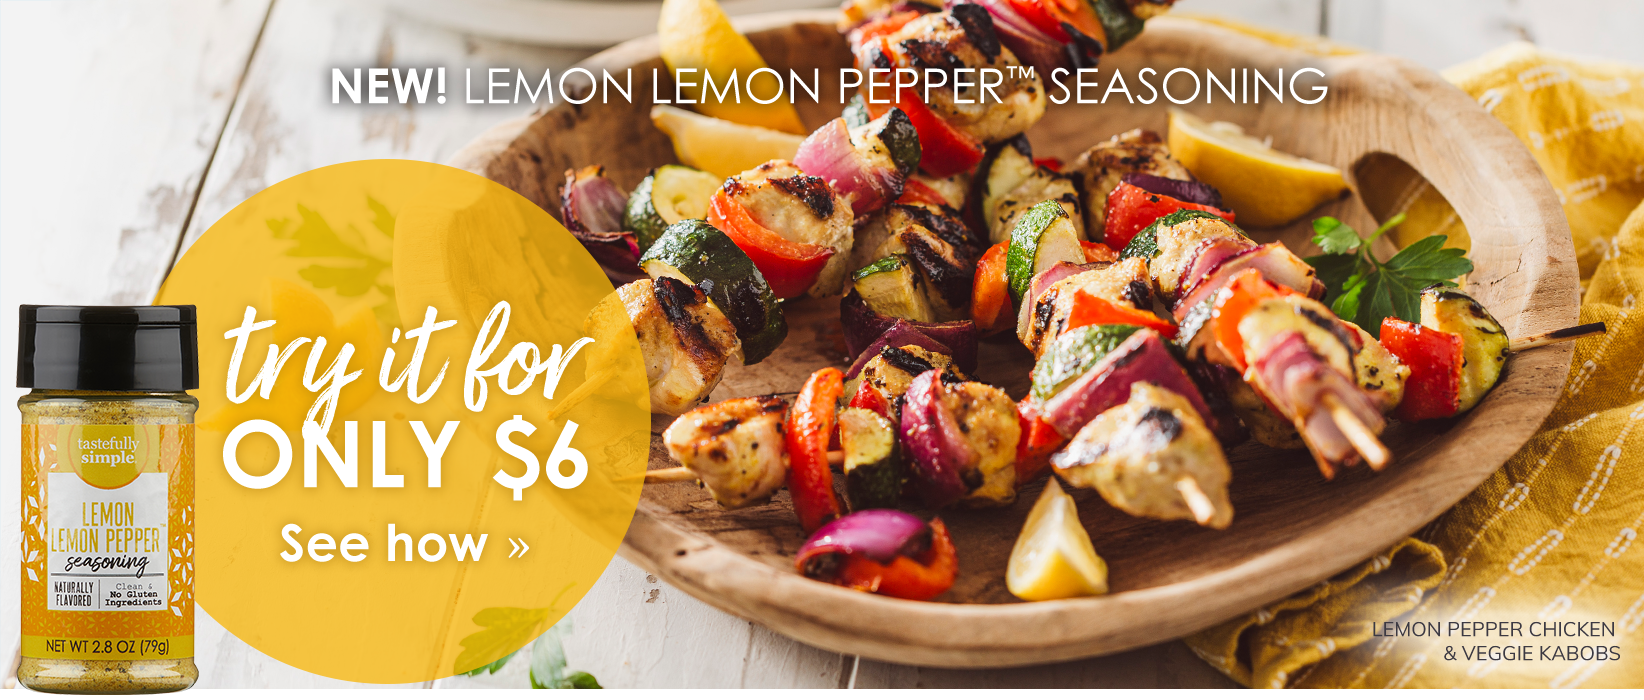 new! lemon lemon pepper seasoning